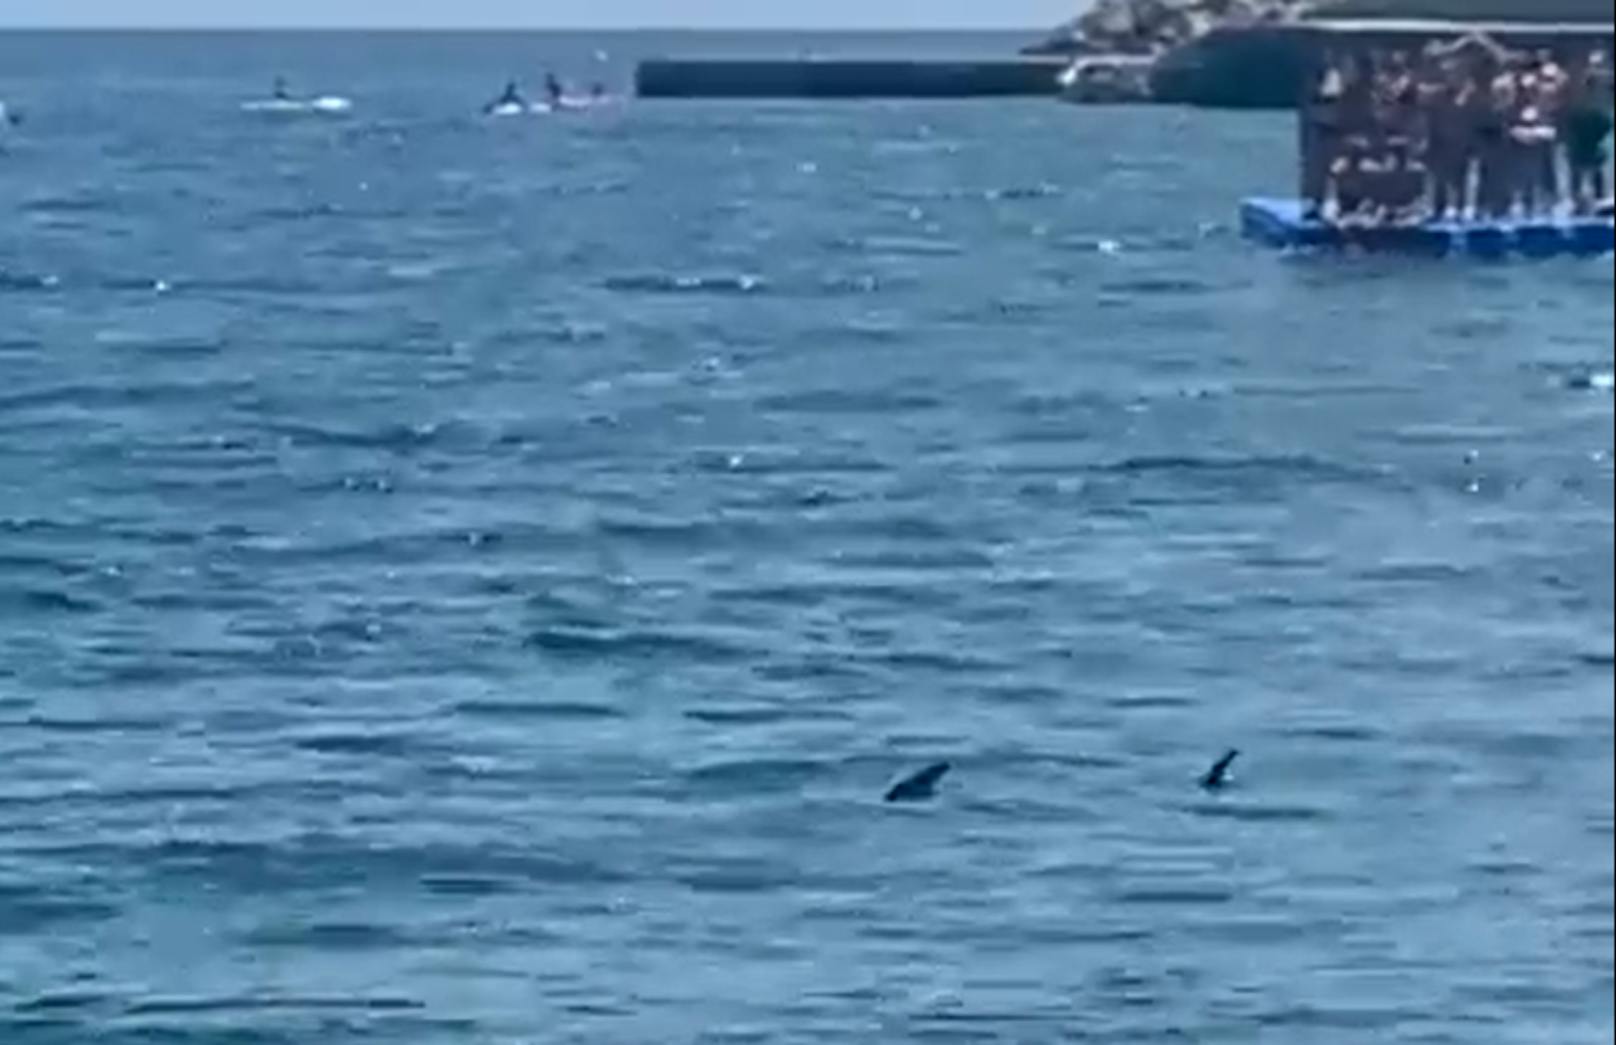 Einige Urlauber flüchteten auf eine Plattform im Meer, als sie die Haie entdeckten.